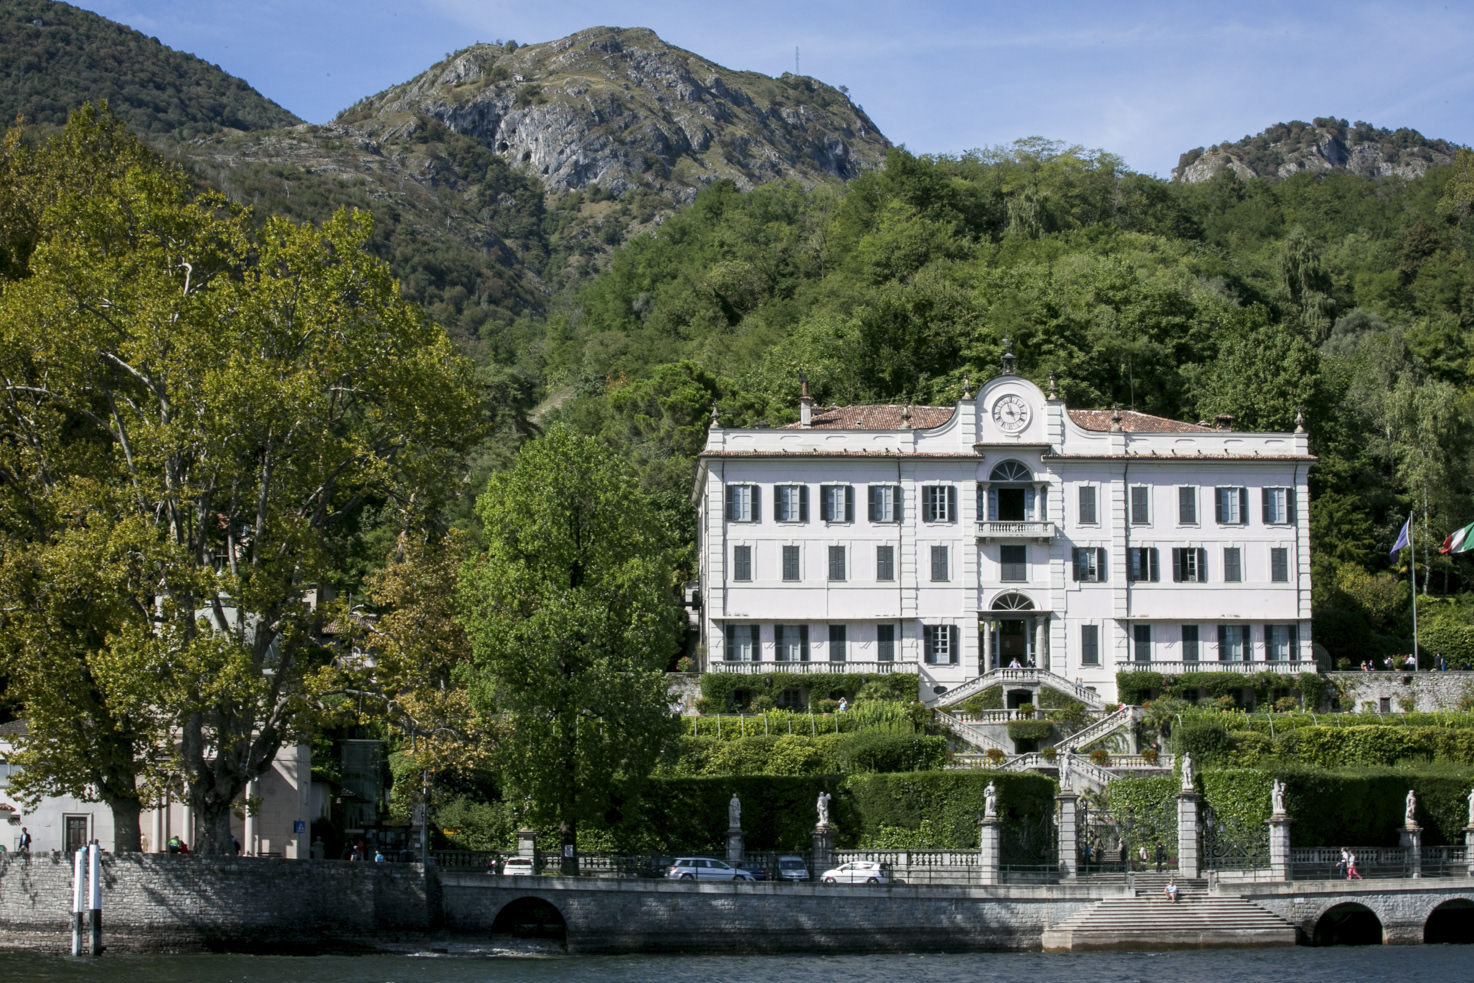 Villa Carlotta for civil wedding in Bellagio